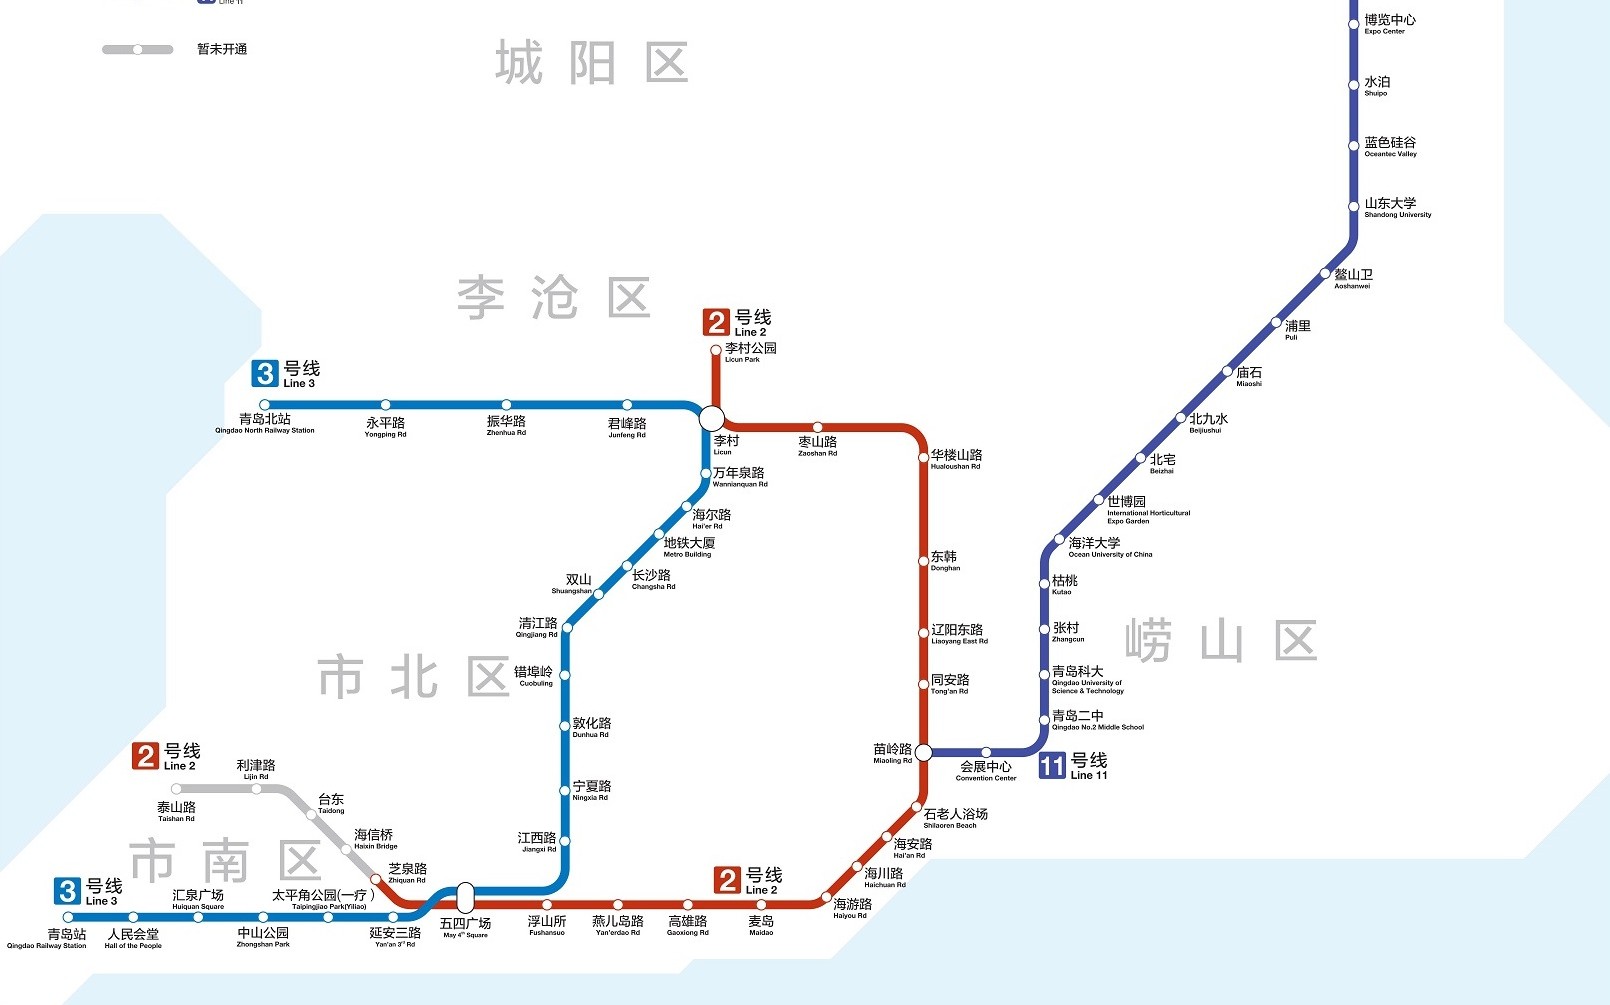 青岛地铁11号线右侧视角(海洋大学-浦里)